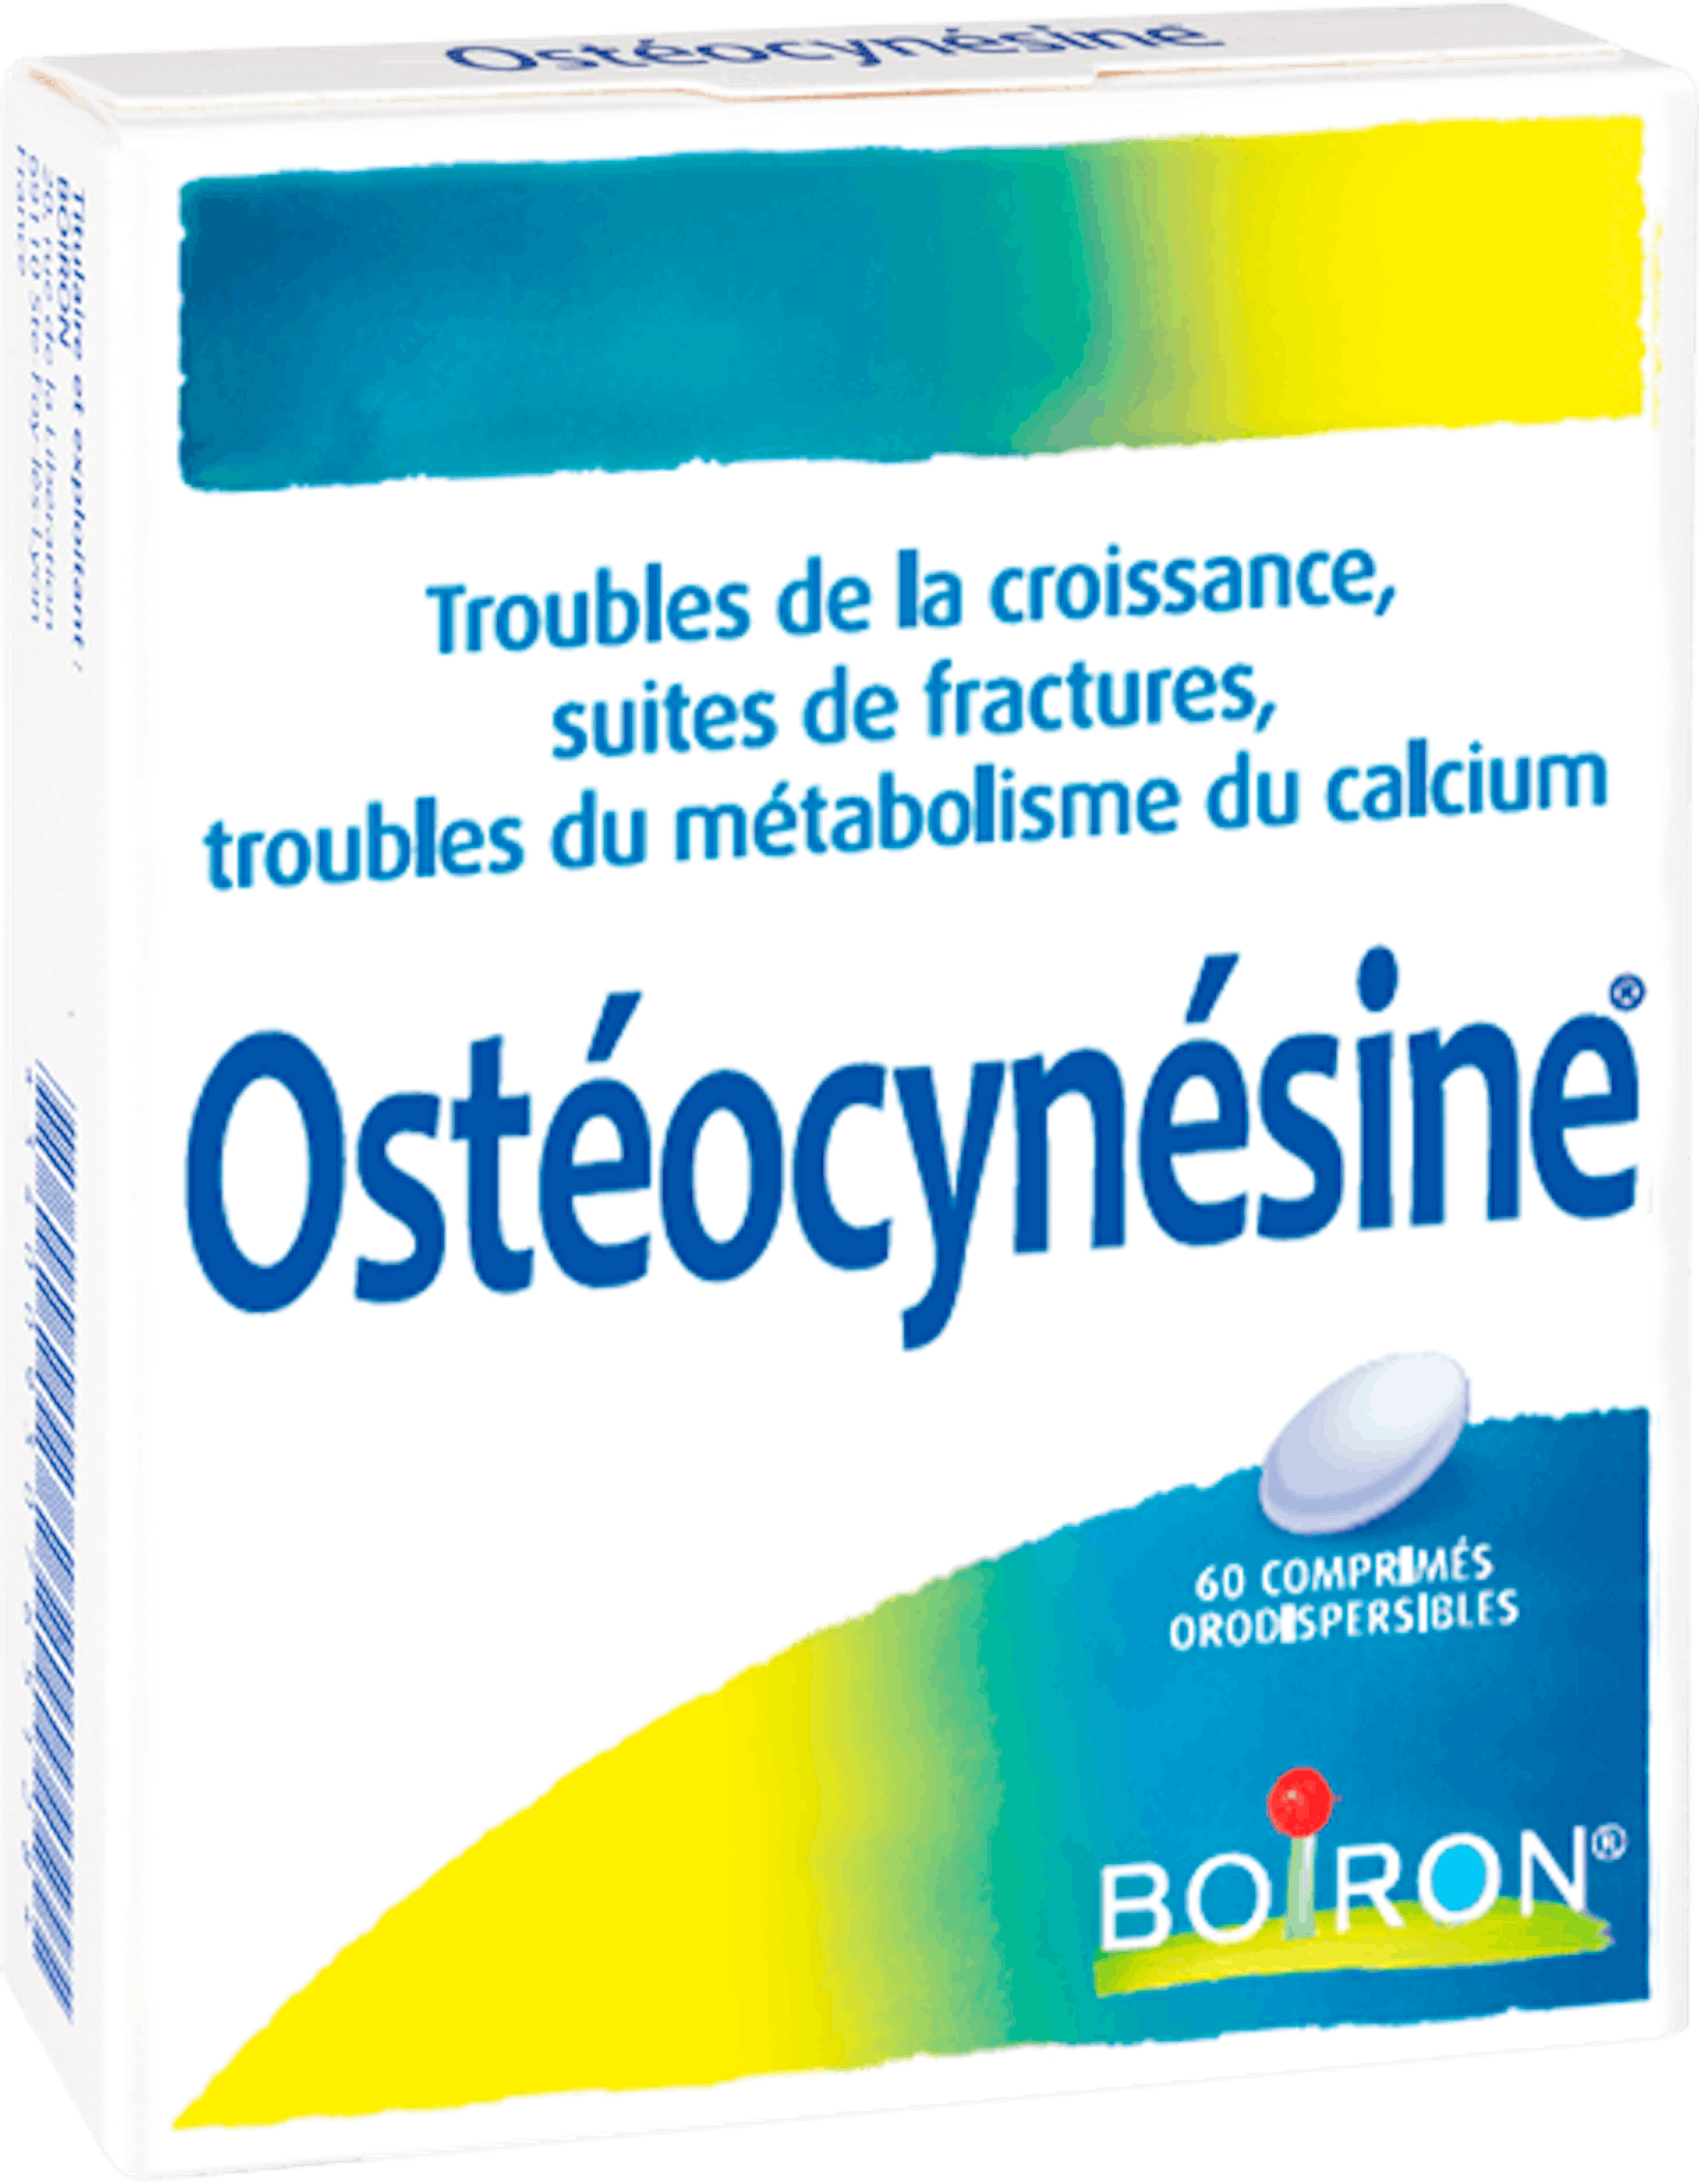 Ostéocynésine 